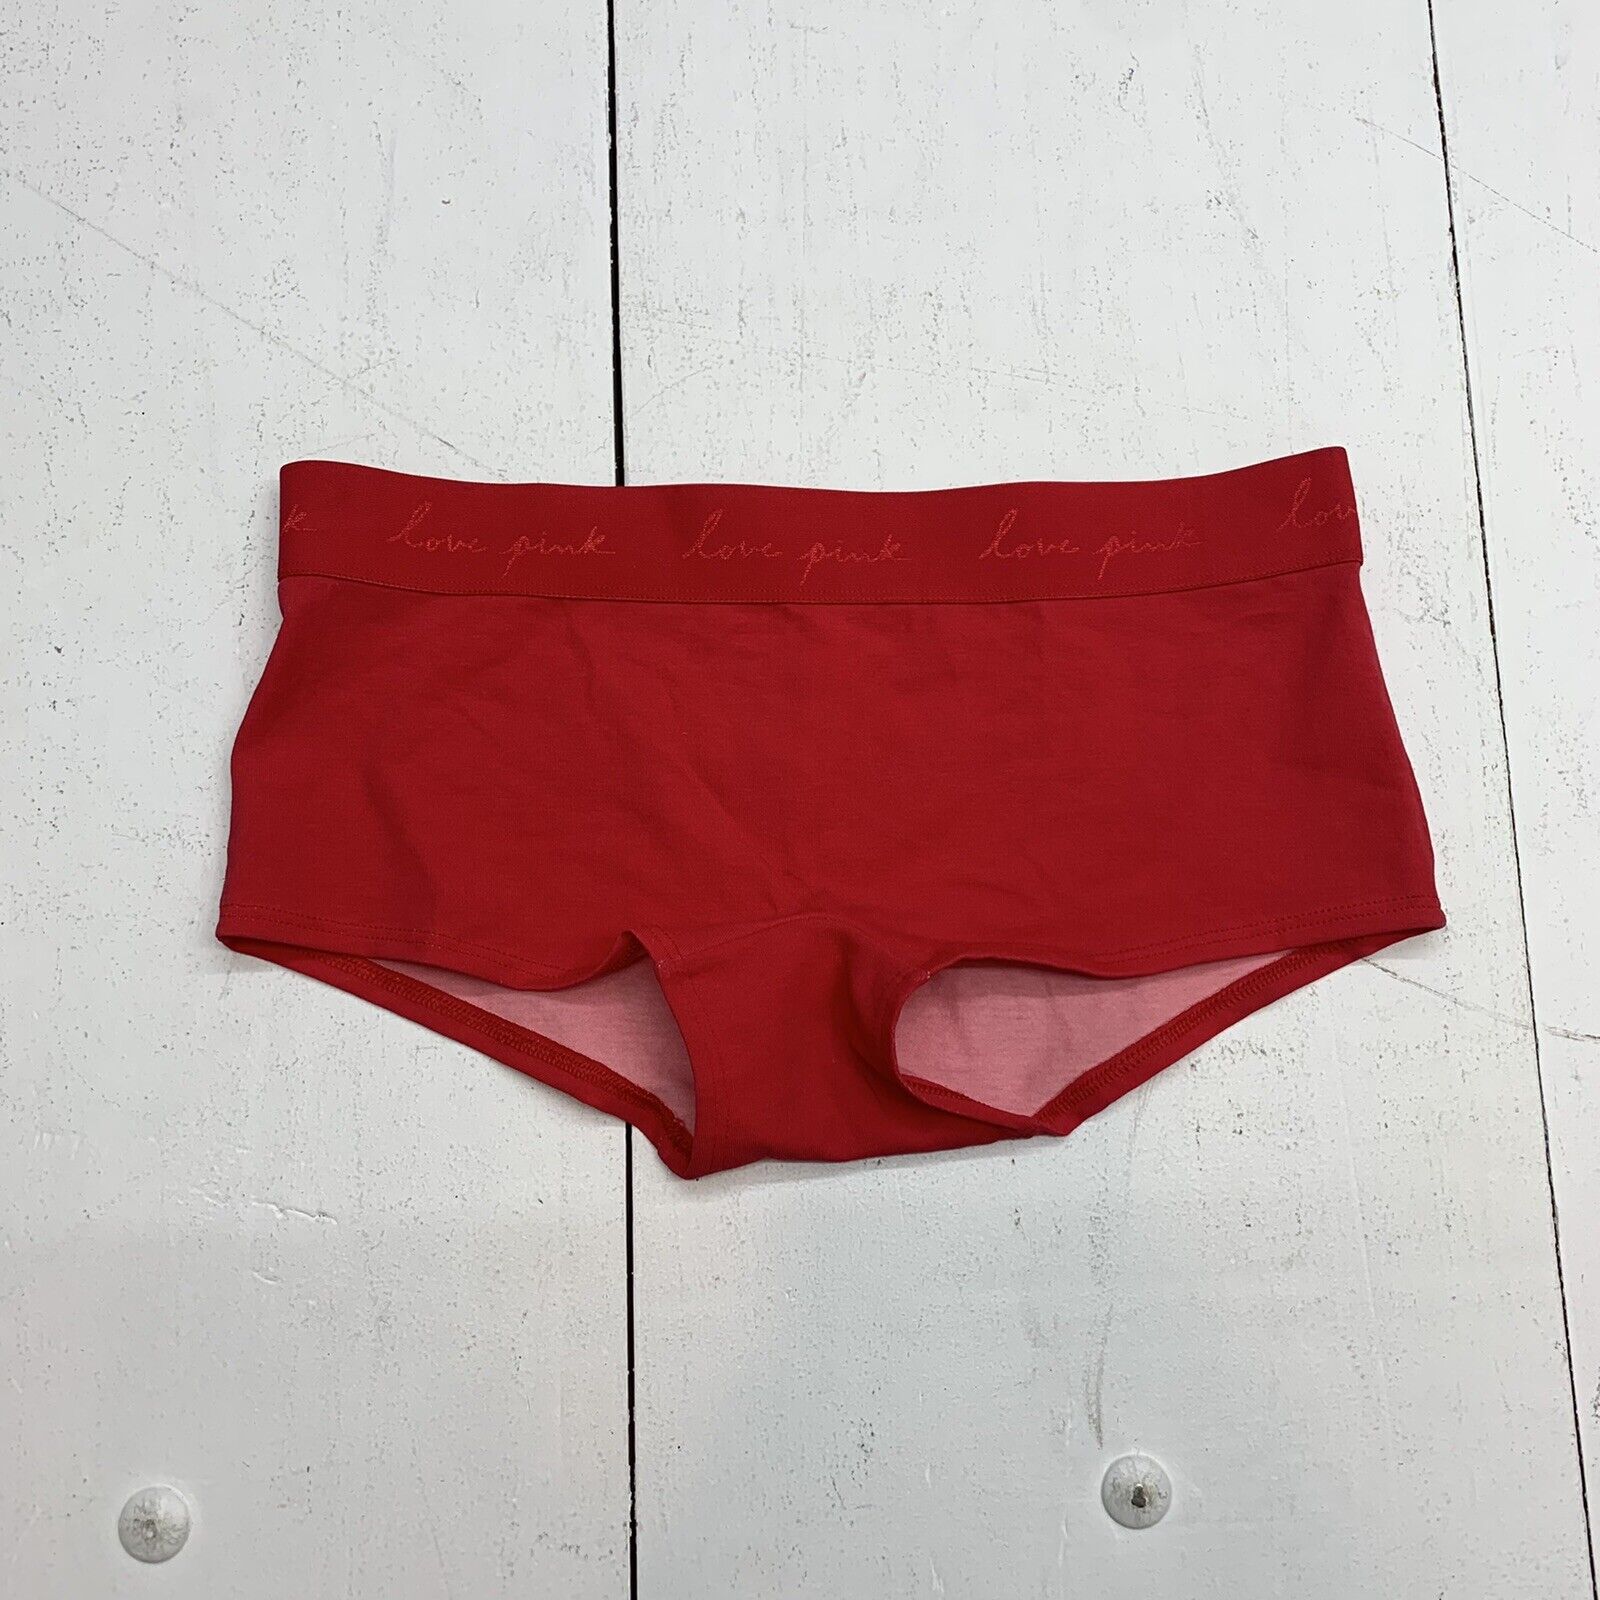 pink victoria secret underwear